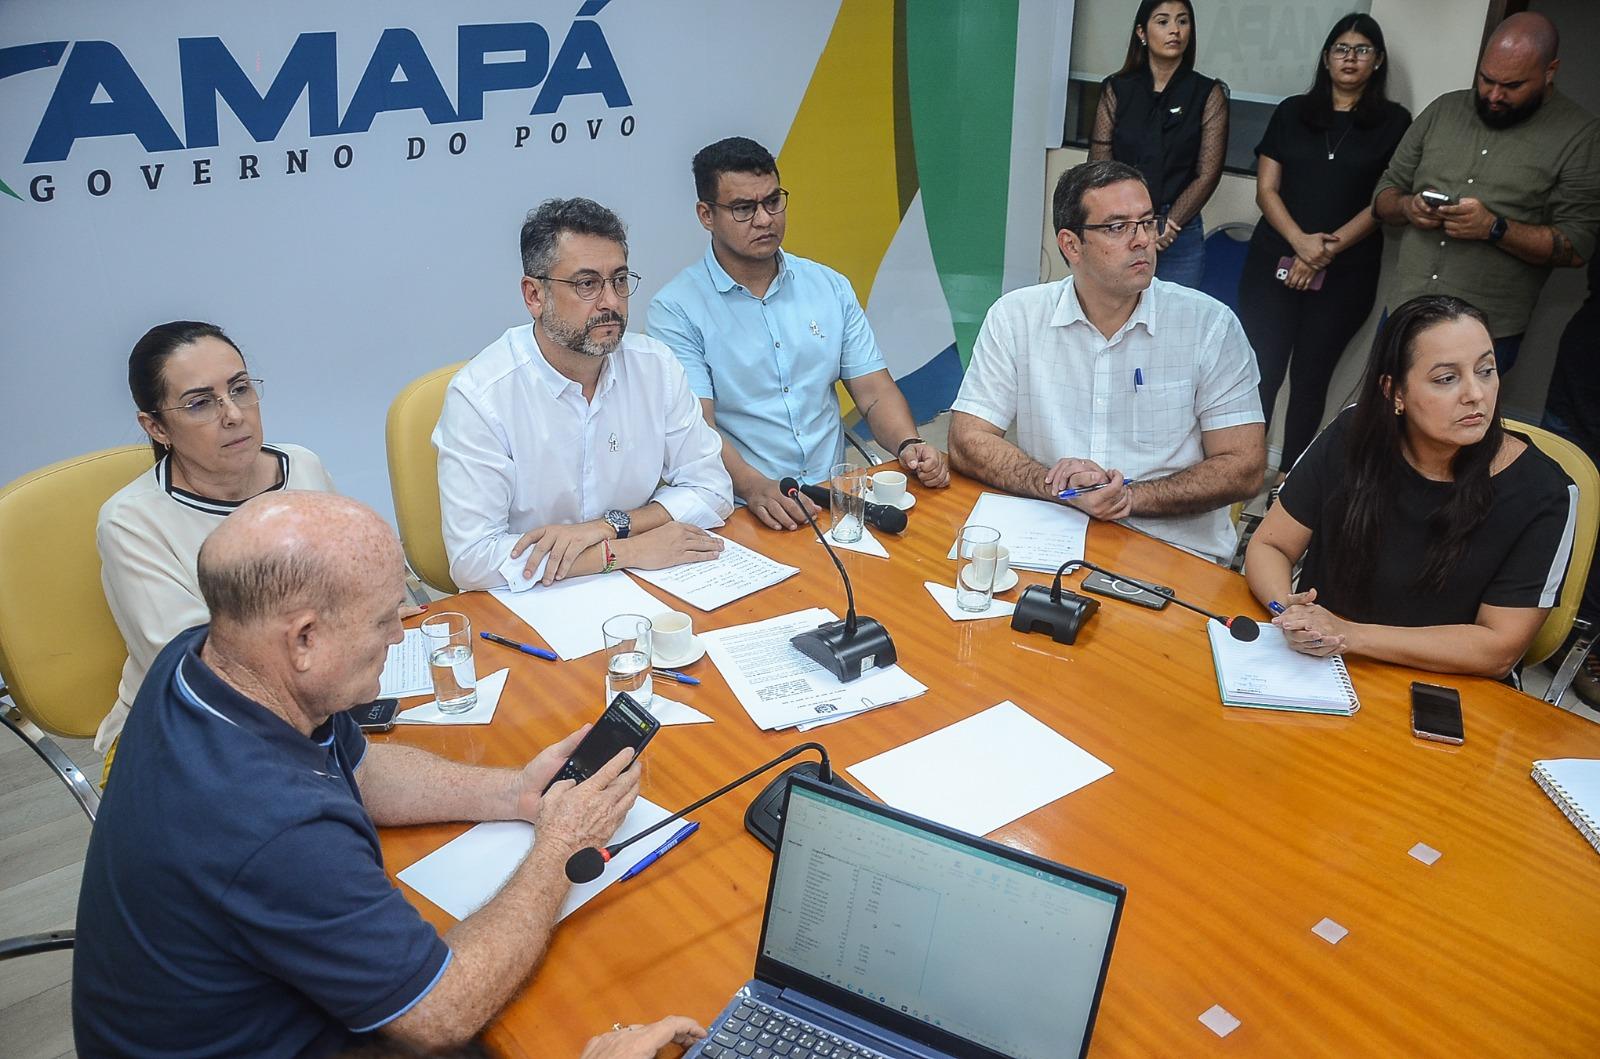 notícia: Governador se reúne com prefeitos e secretários de saúde dos 16 municípios para tratar do surto de doenças respiratórias no Amapá